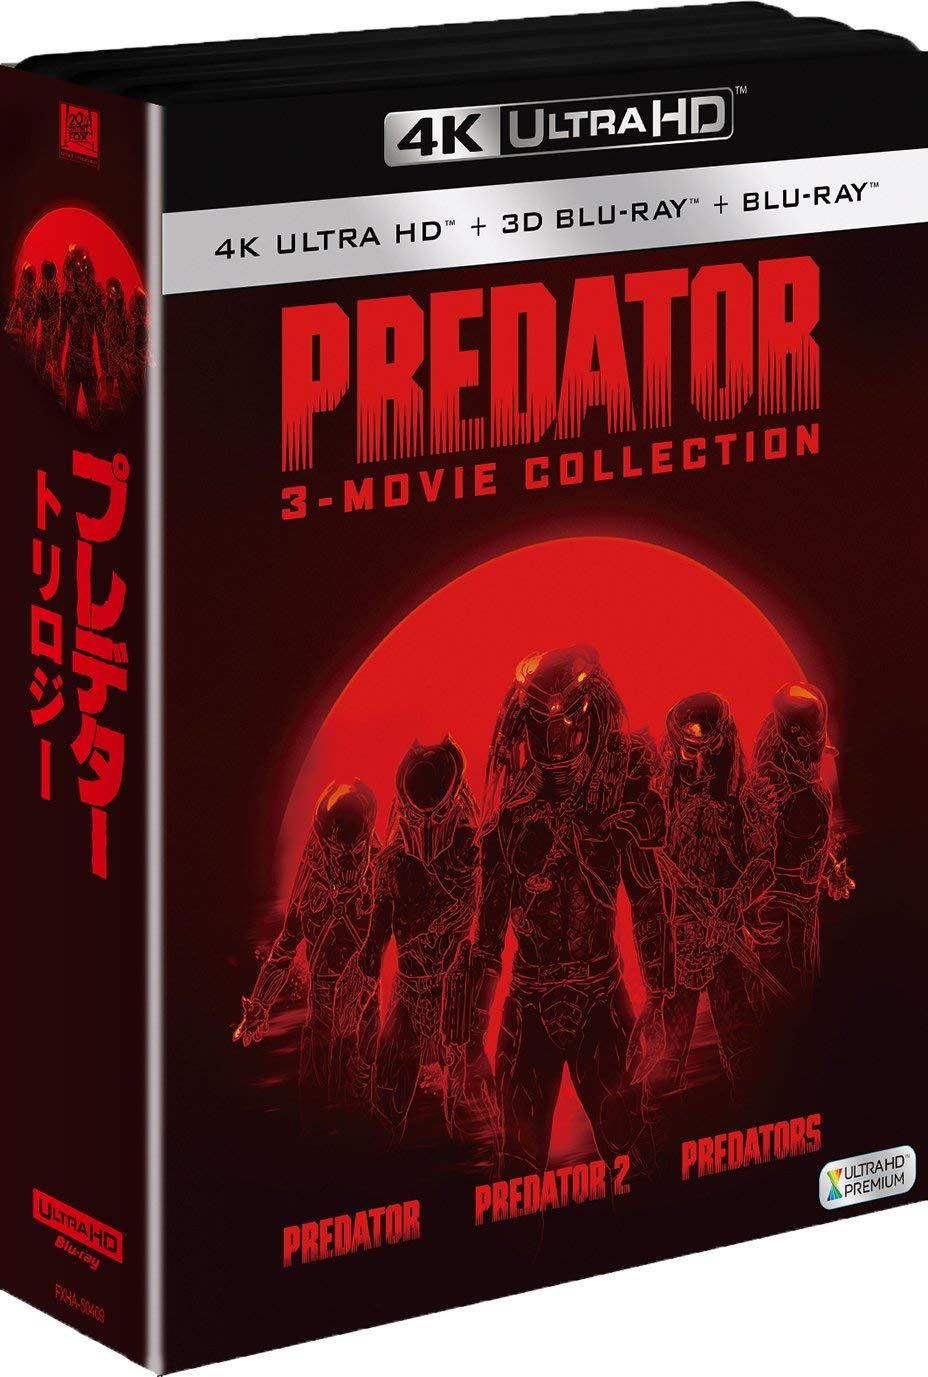 Predator 4K Ultra HD Trilogy Box